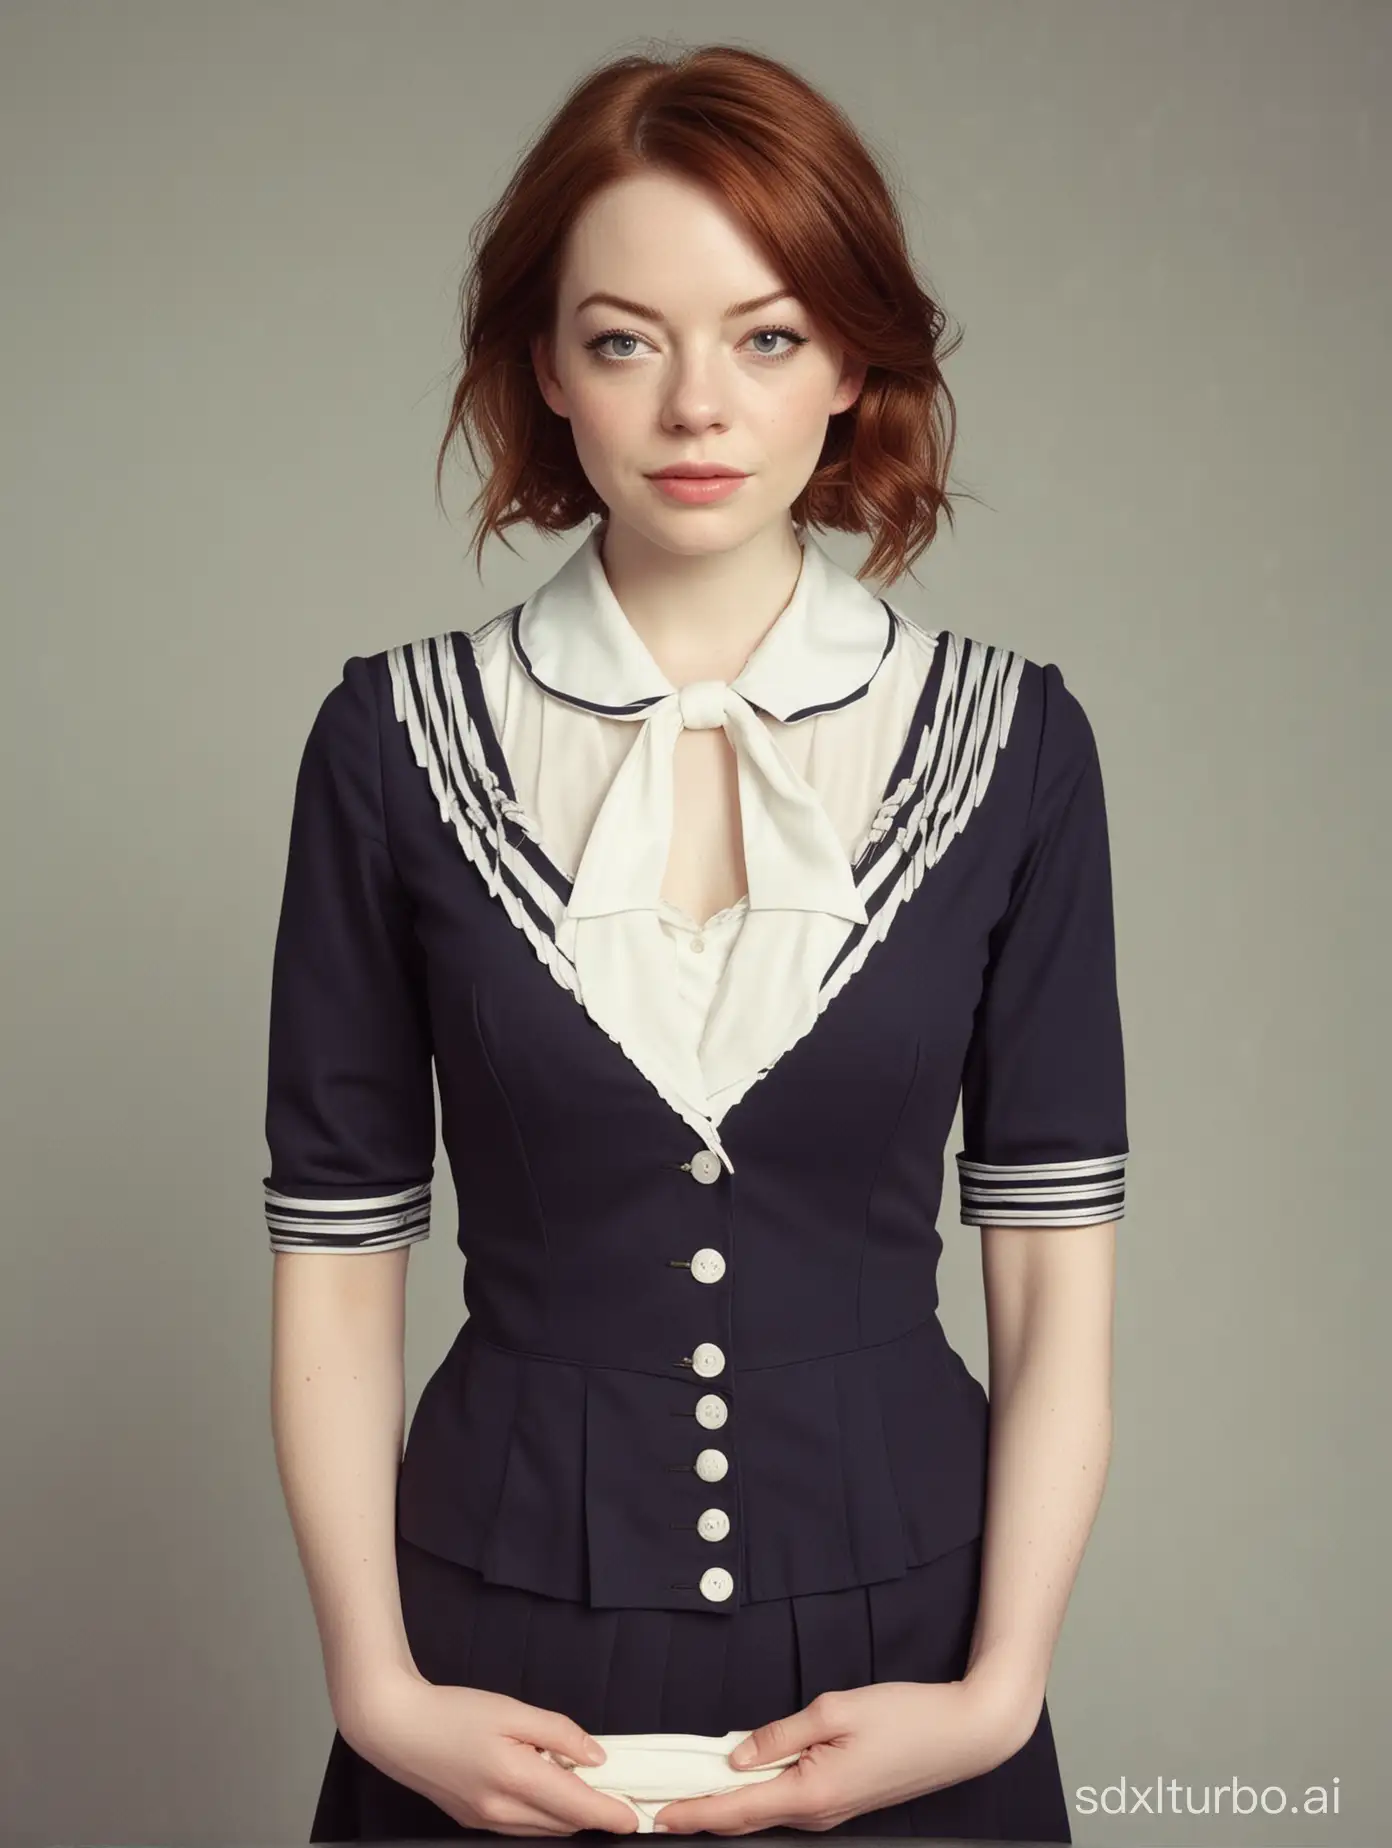 Sensual-Sailor-Woman-in-Emma-Stone-Style-Portrait